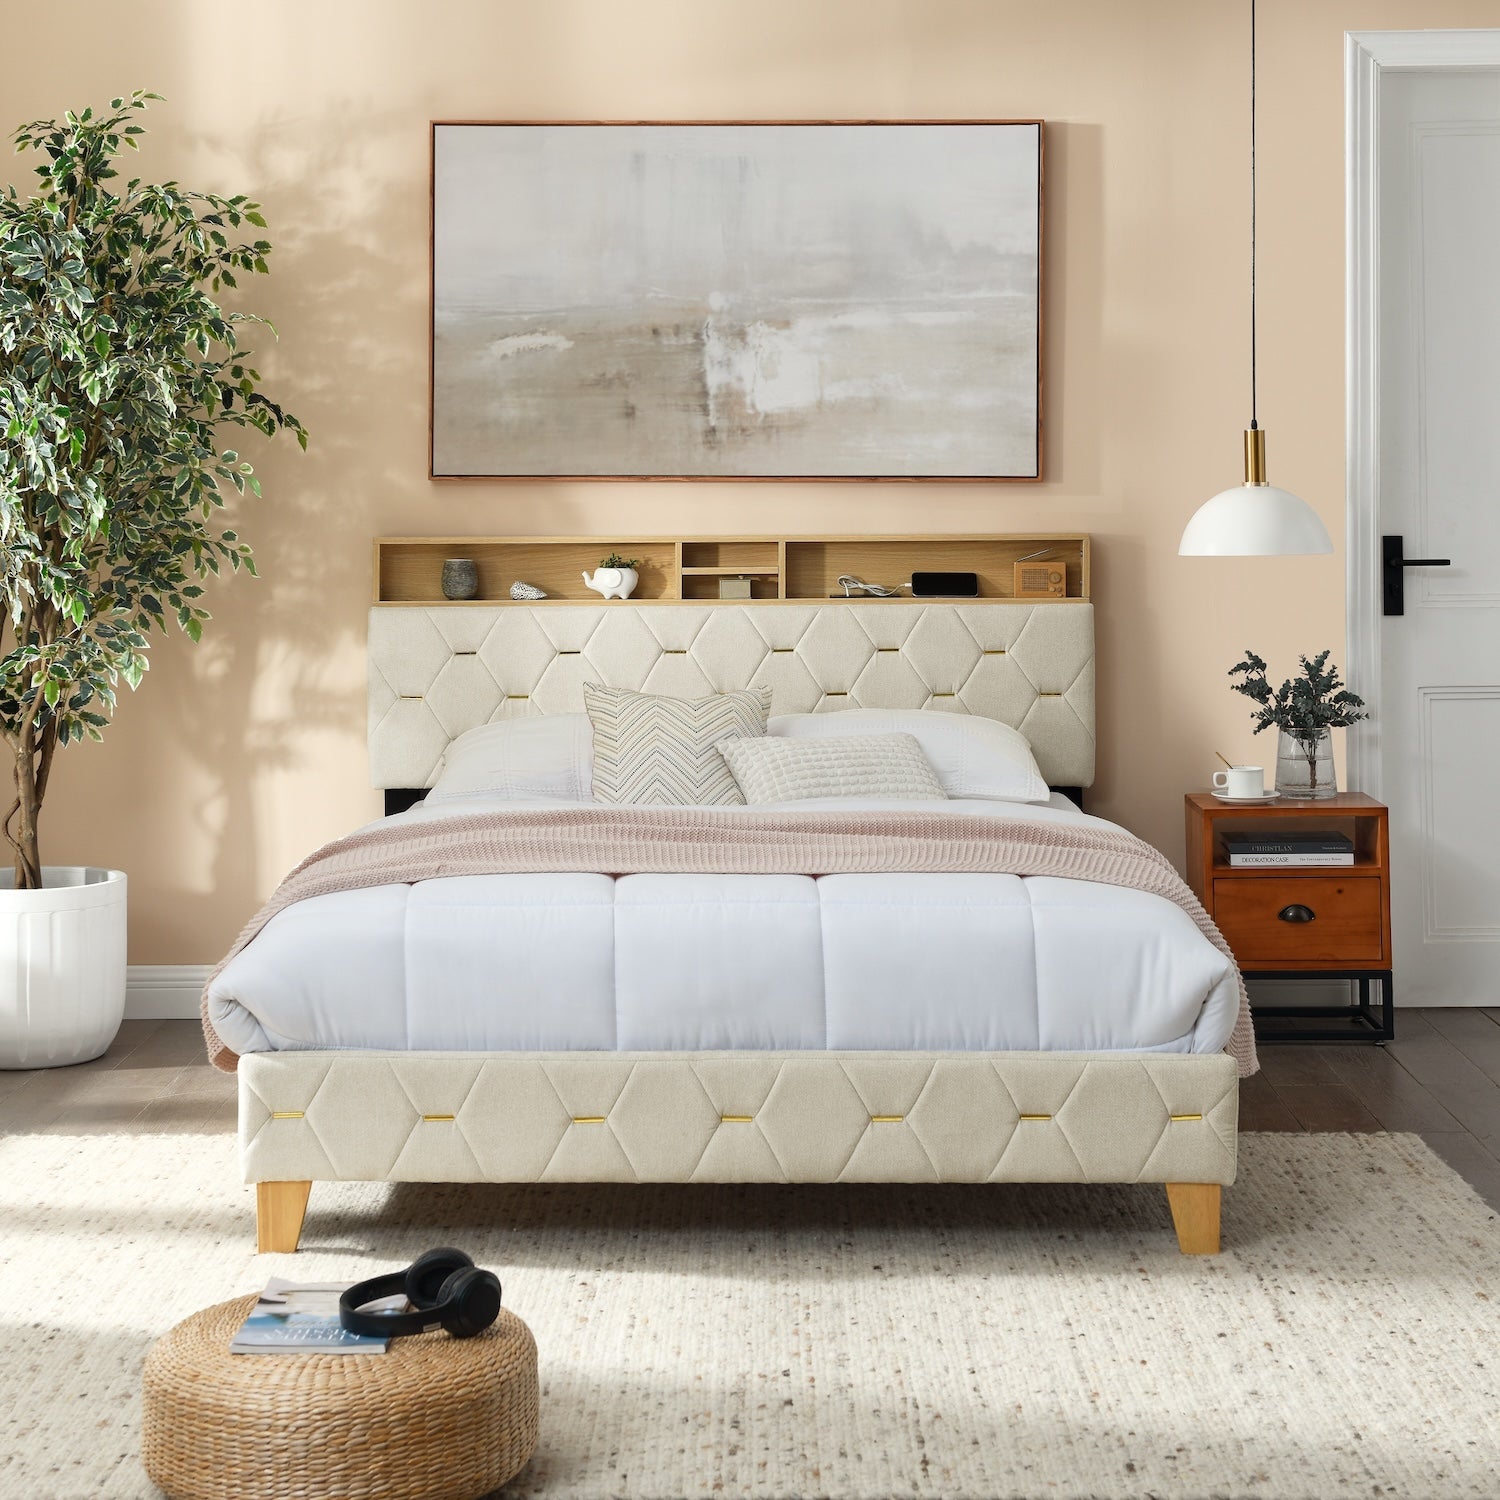 Hix Contemporary Linen Platform Bed with Headboard Shelf - Beige & Gold